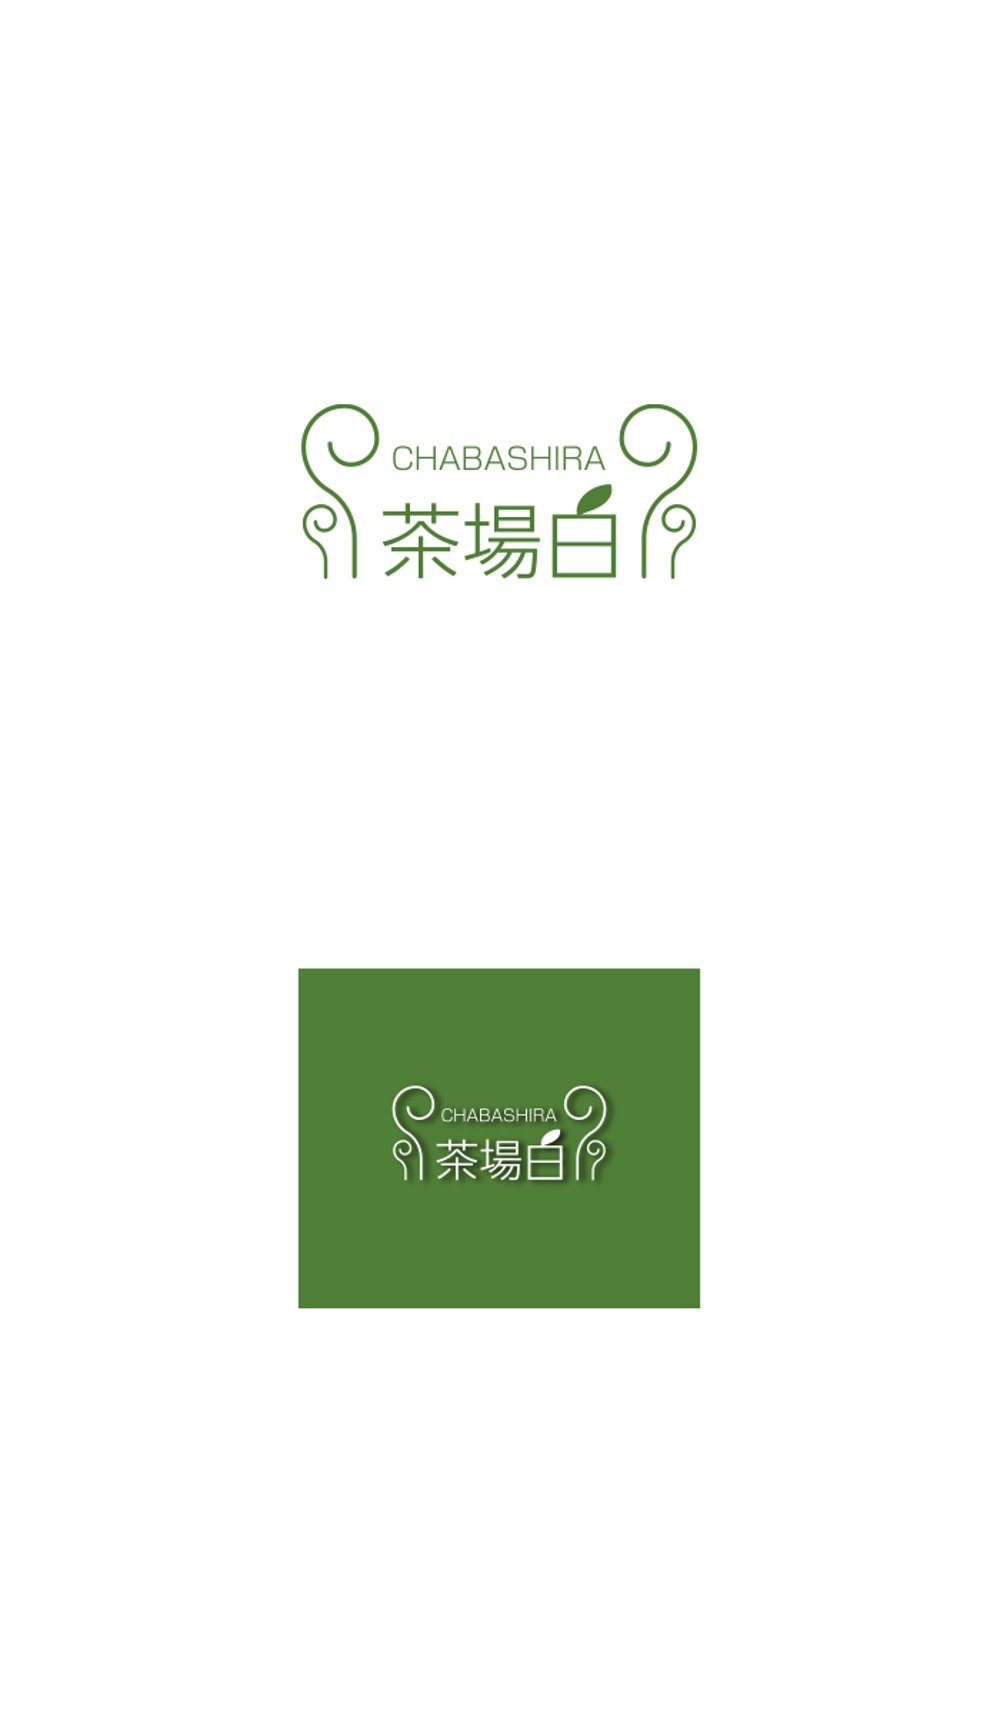 茶場白 logo_serve.jpg